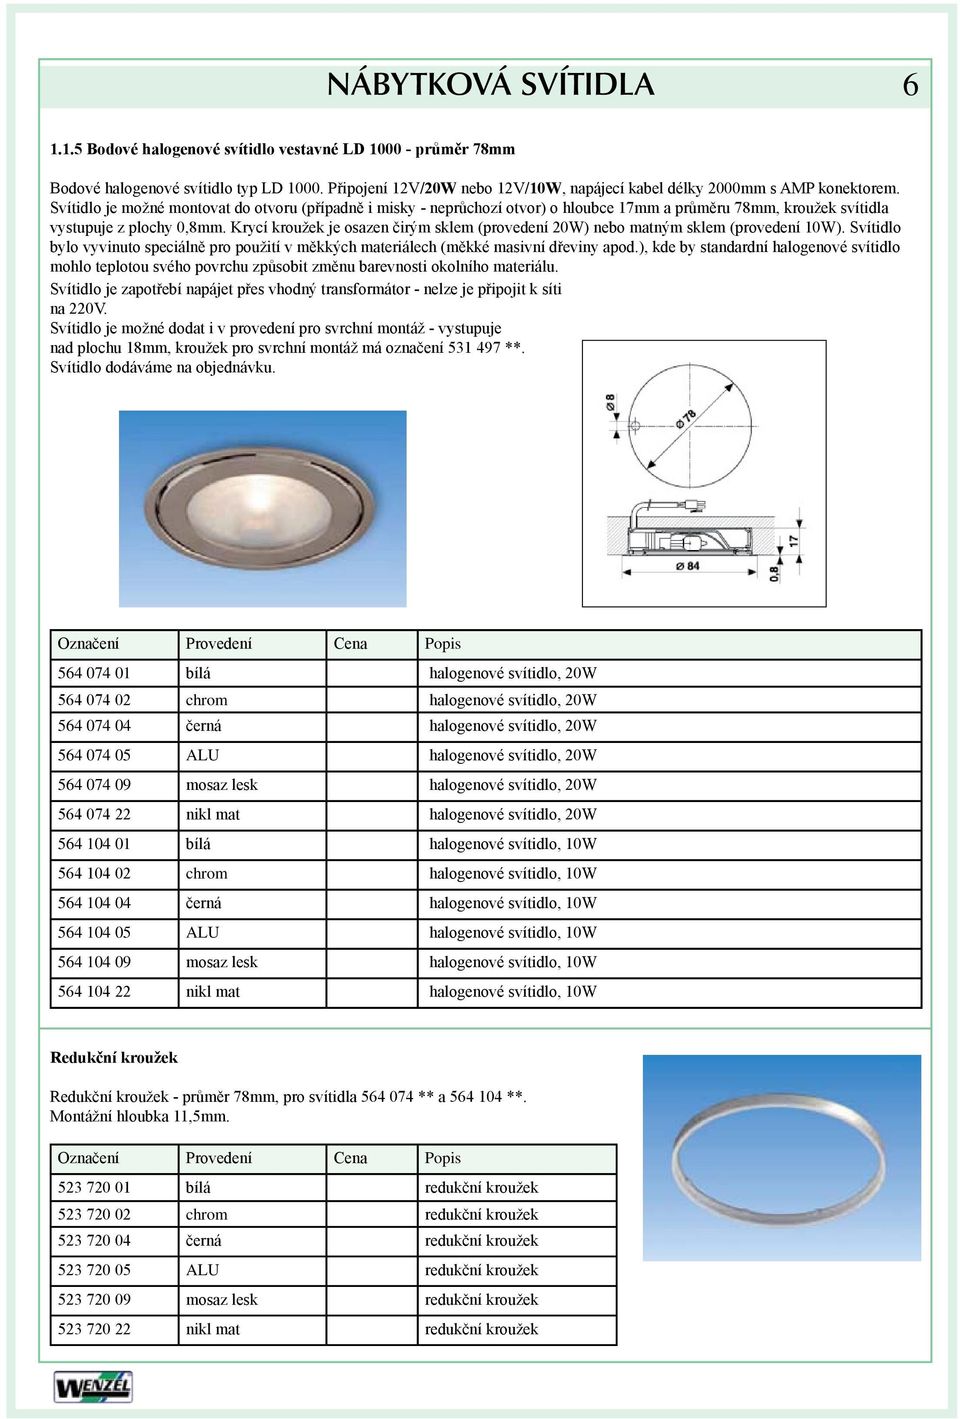 Krycí kroužek je osazen čirým sklem (provedení 20W) nebo matným sklem (provedení 10W). Svítidlo bylo vyvinuto speciálně pro použití v měkkých materiálech (měkké masivní dřeviny apod.